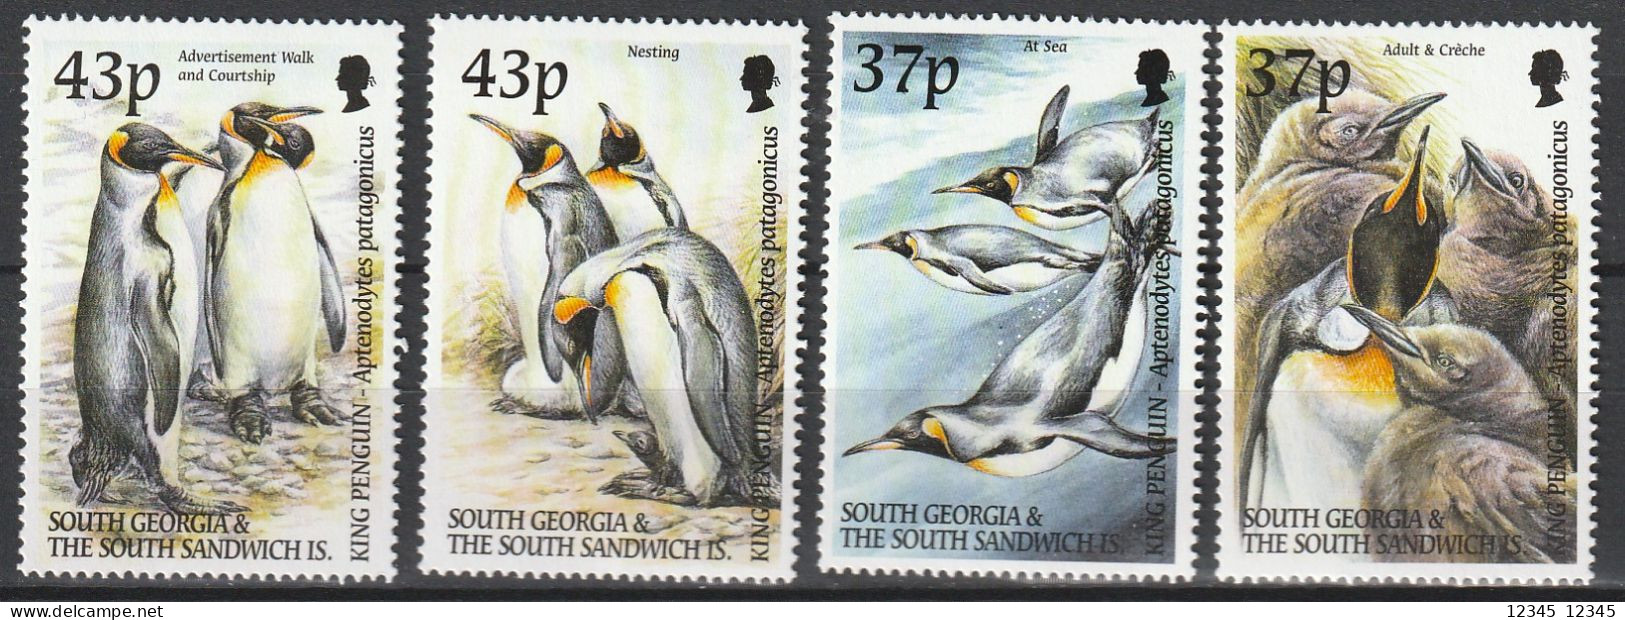 Zuid Georgië 2000, Postfris MNH, Birds, Penguin - Géorgie Du Sud